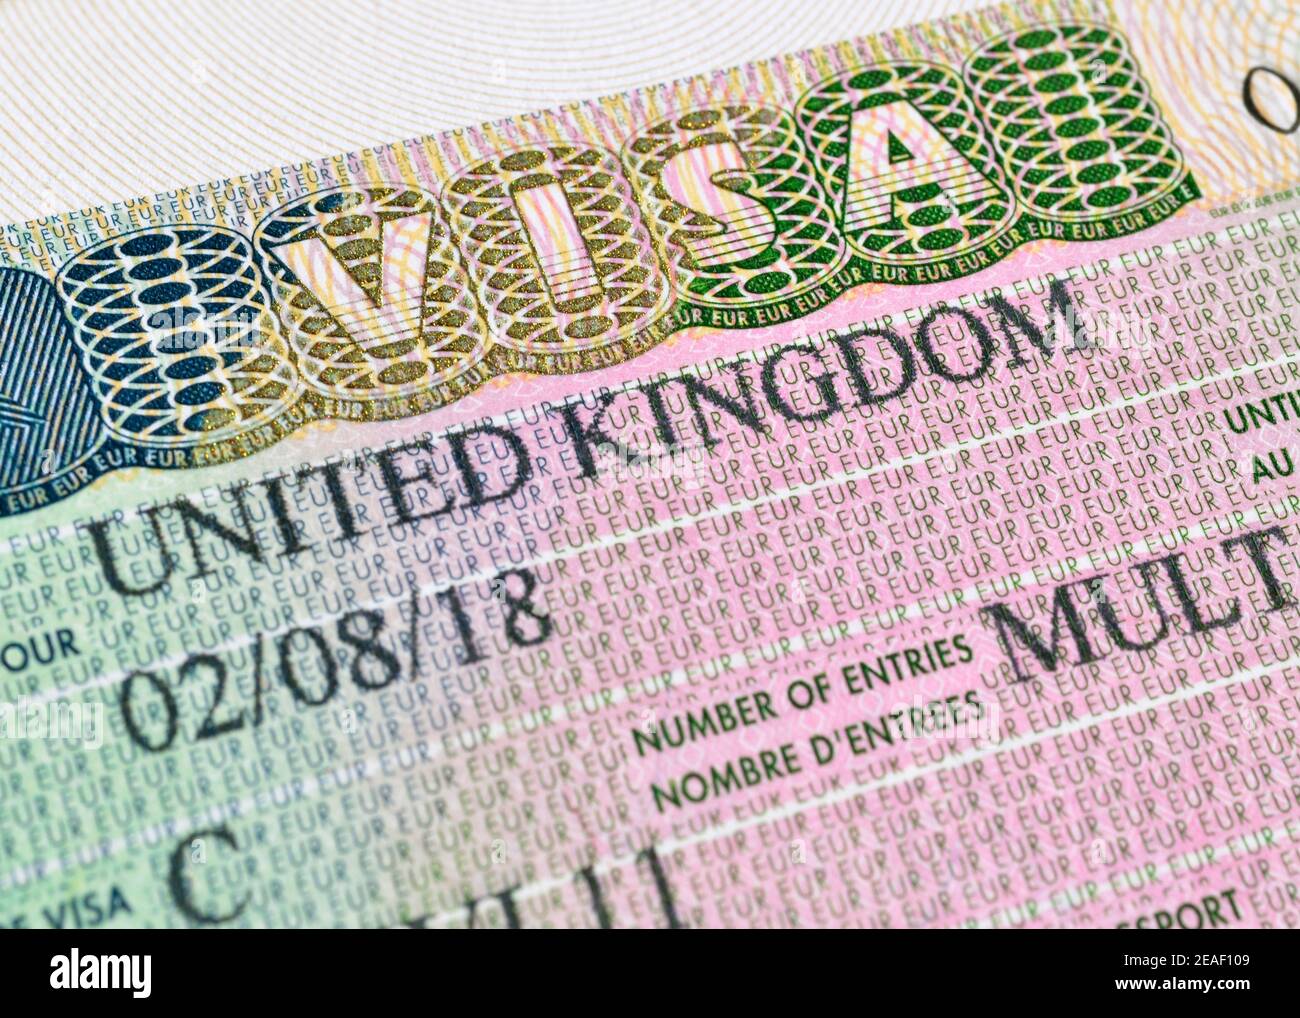 UK Visa Stock Photo